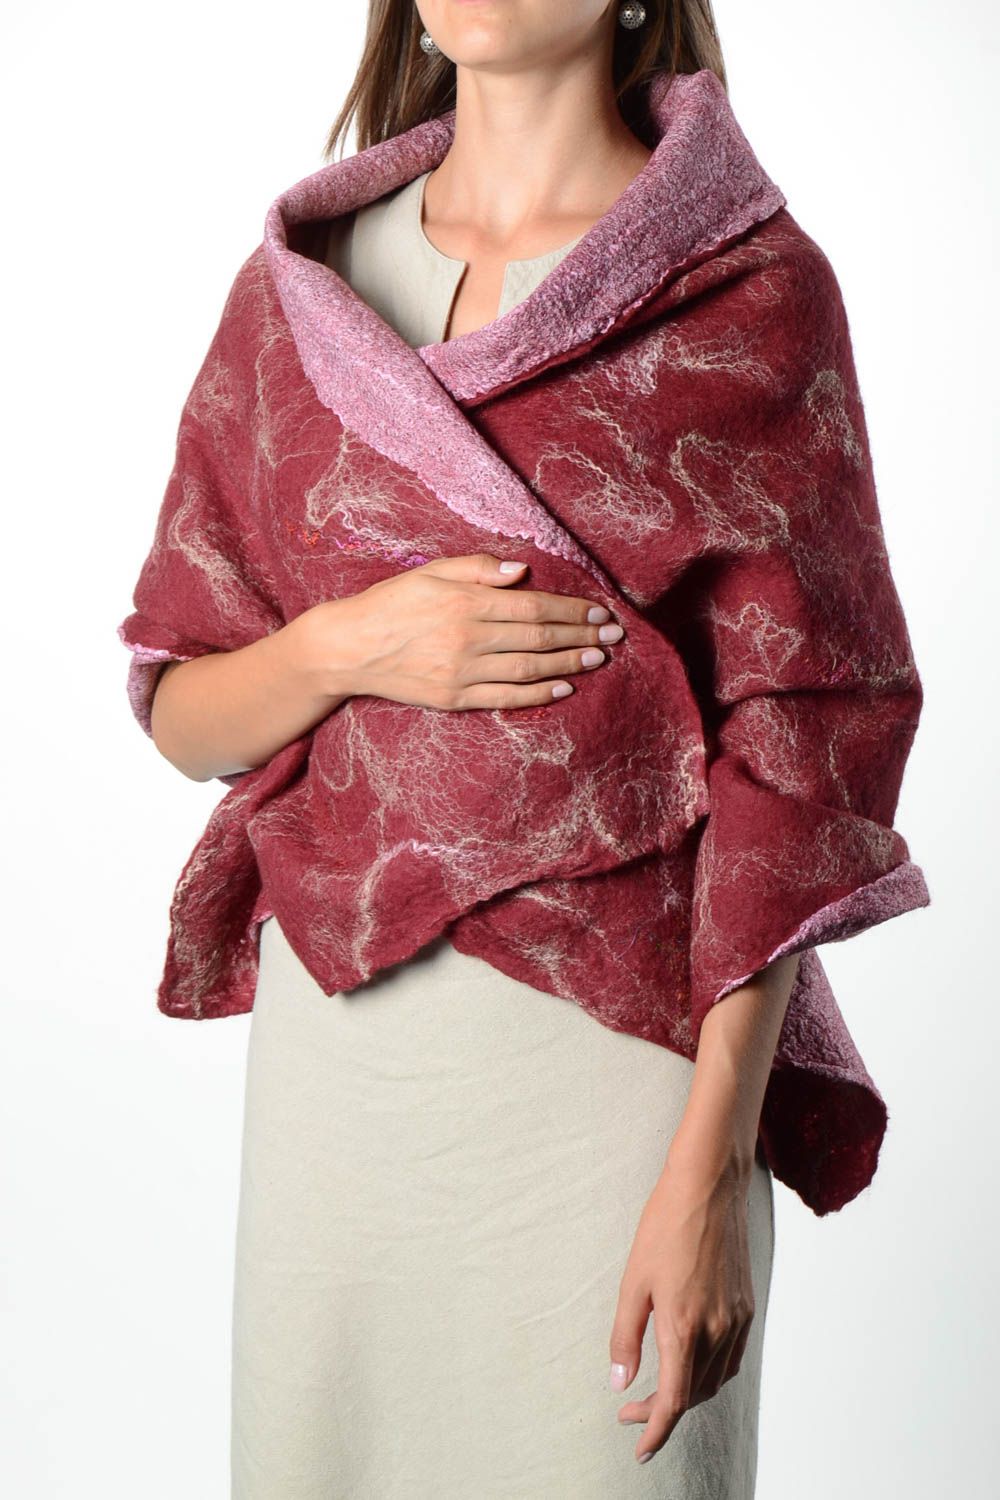 Женский шарф палантин ручной работы валяный палантин из шерсти бордовый фото 1